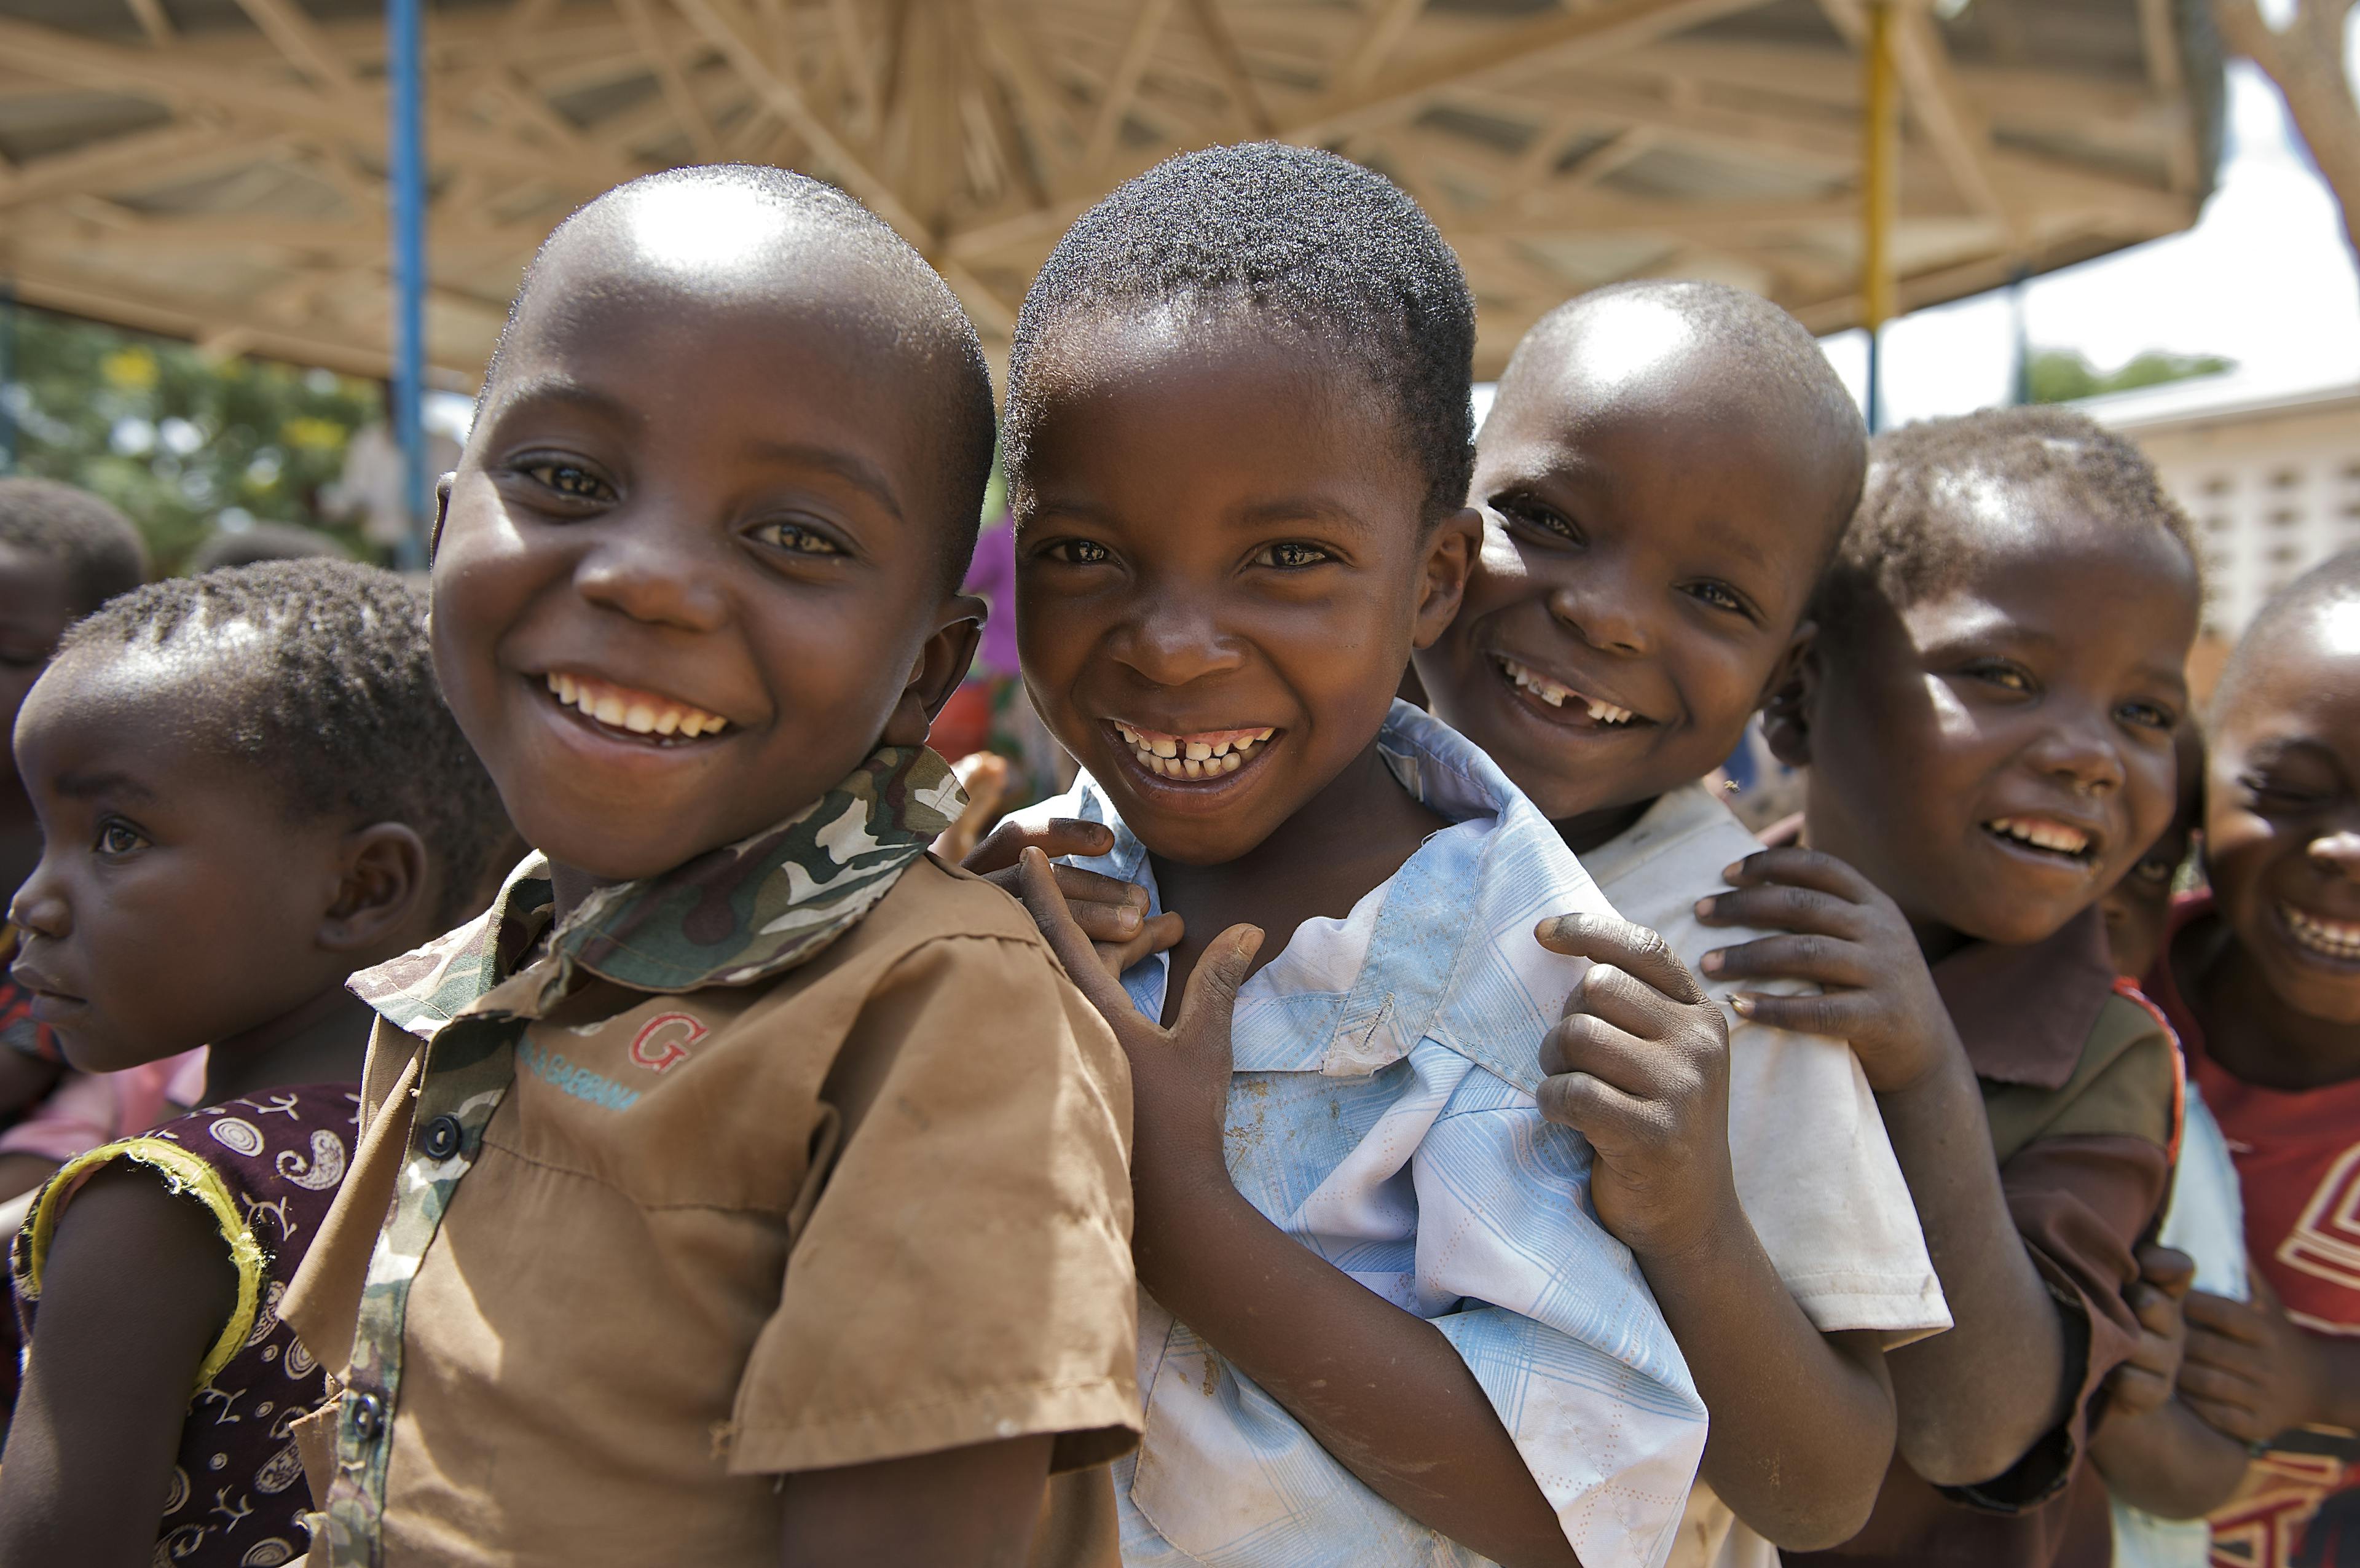 Glada barn i Malawi